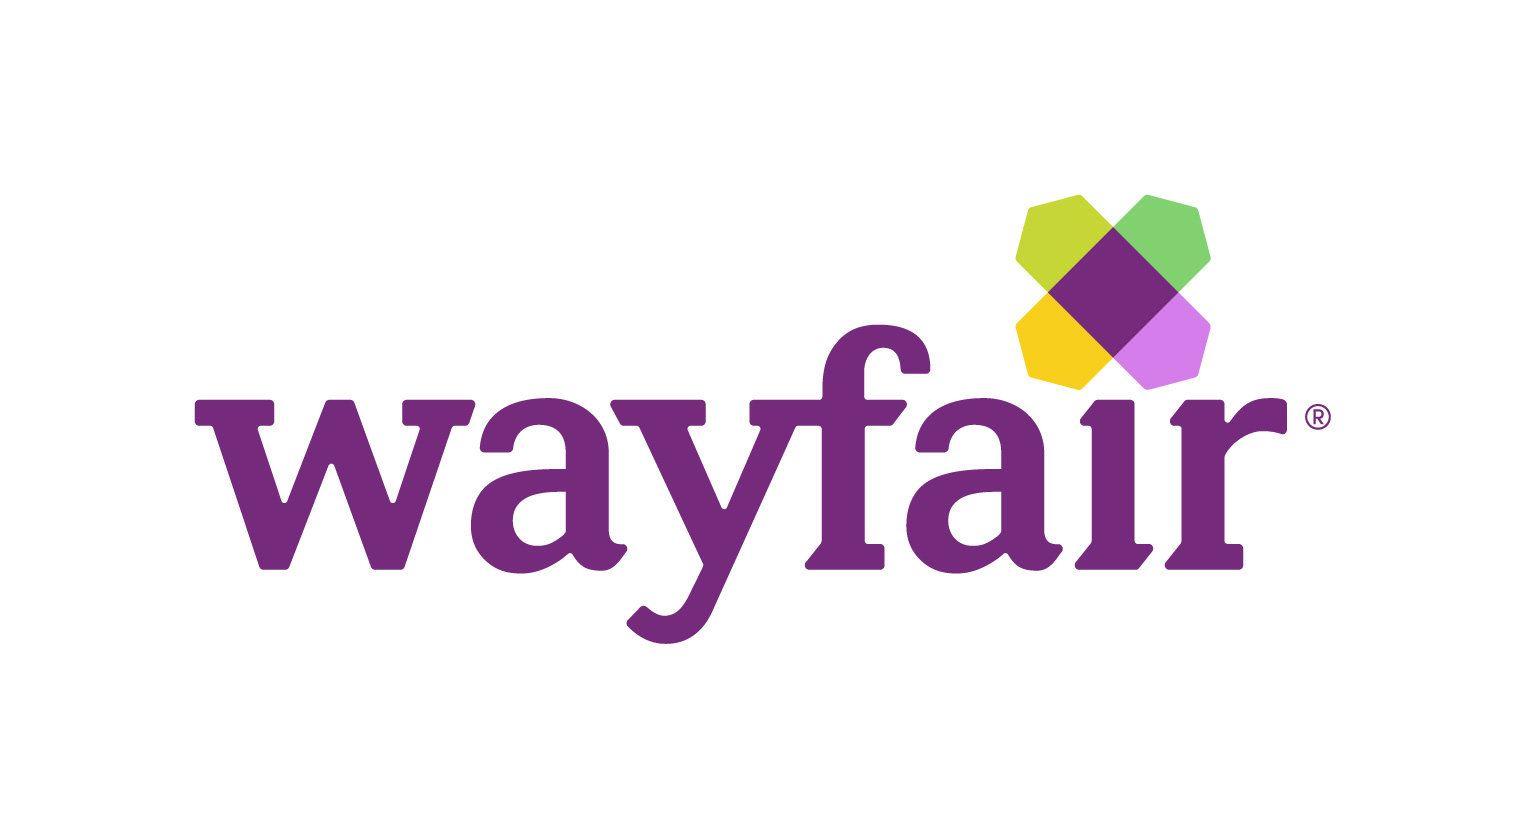 Wayfair Logo - About